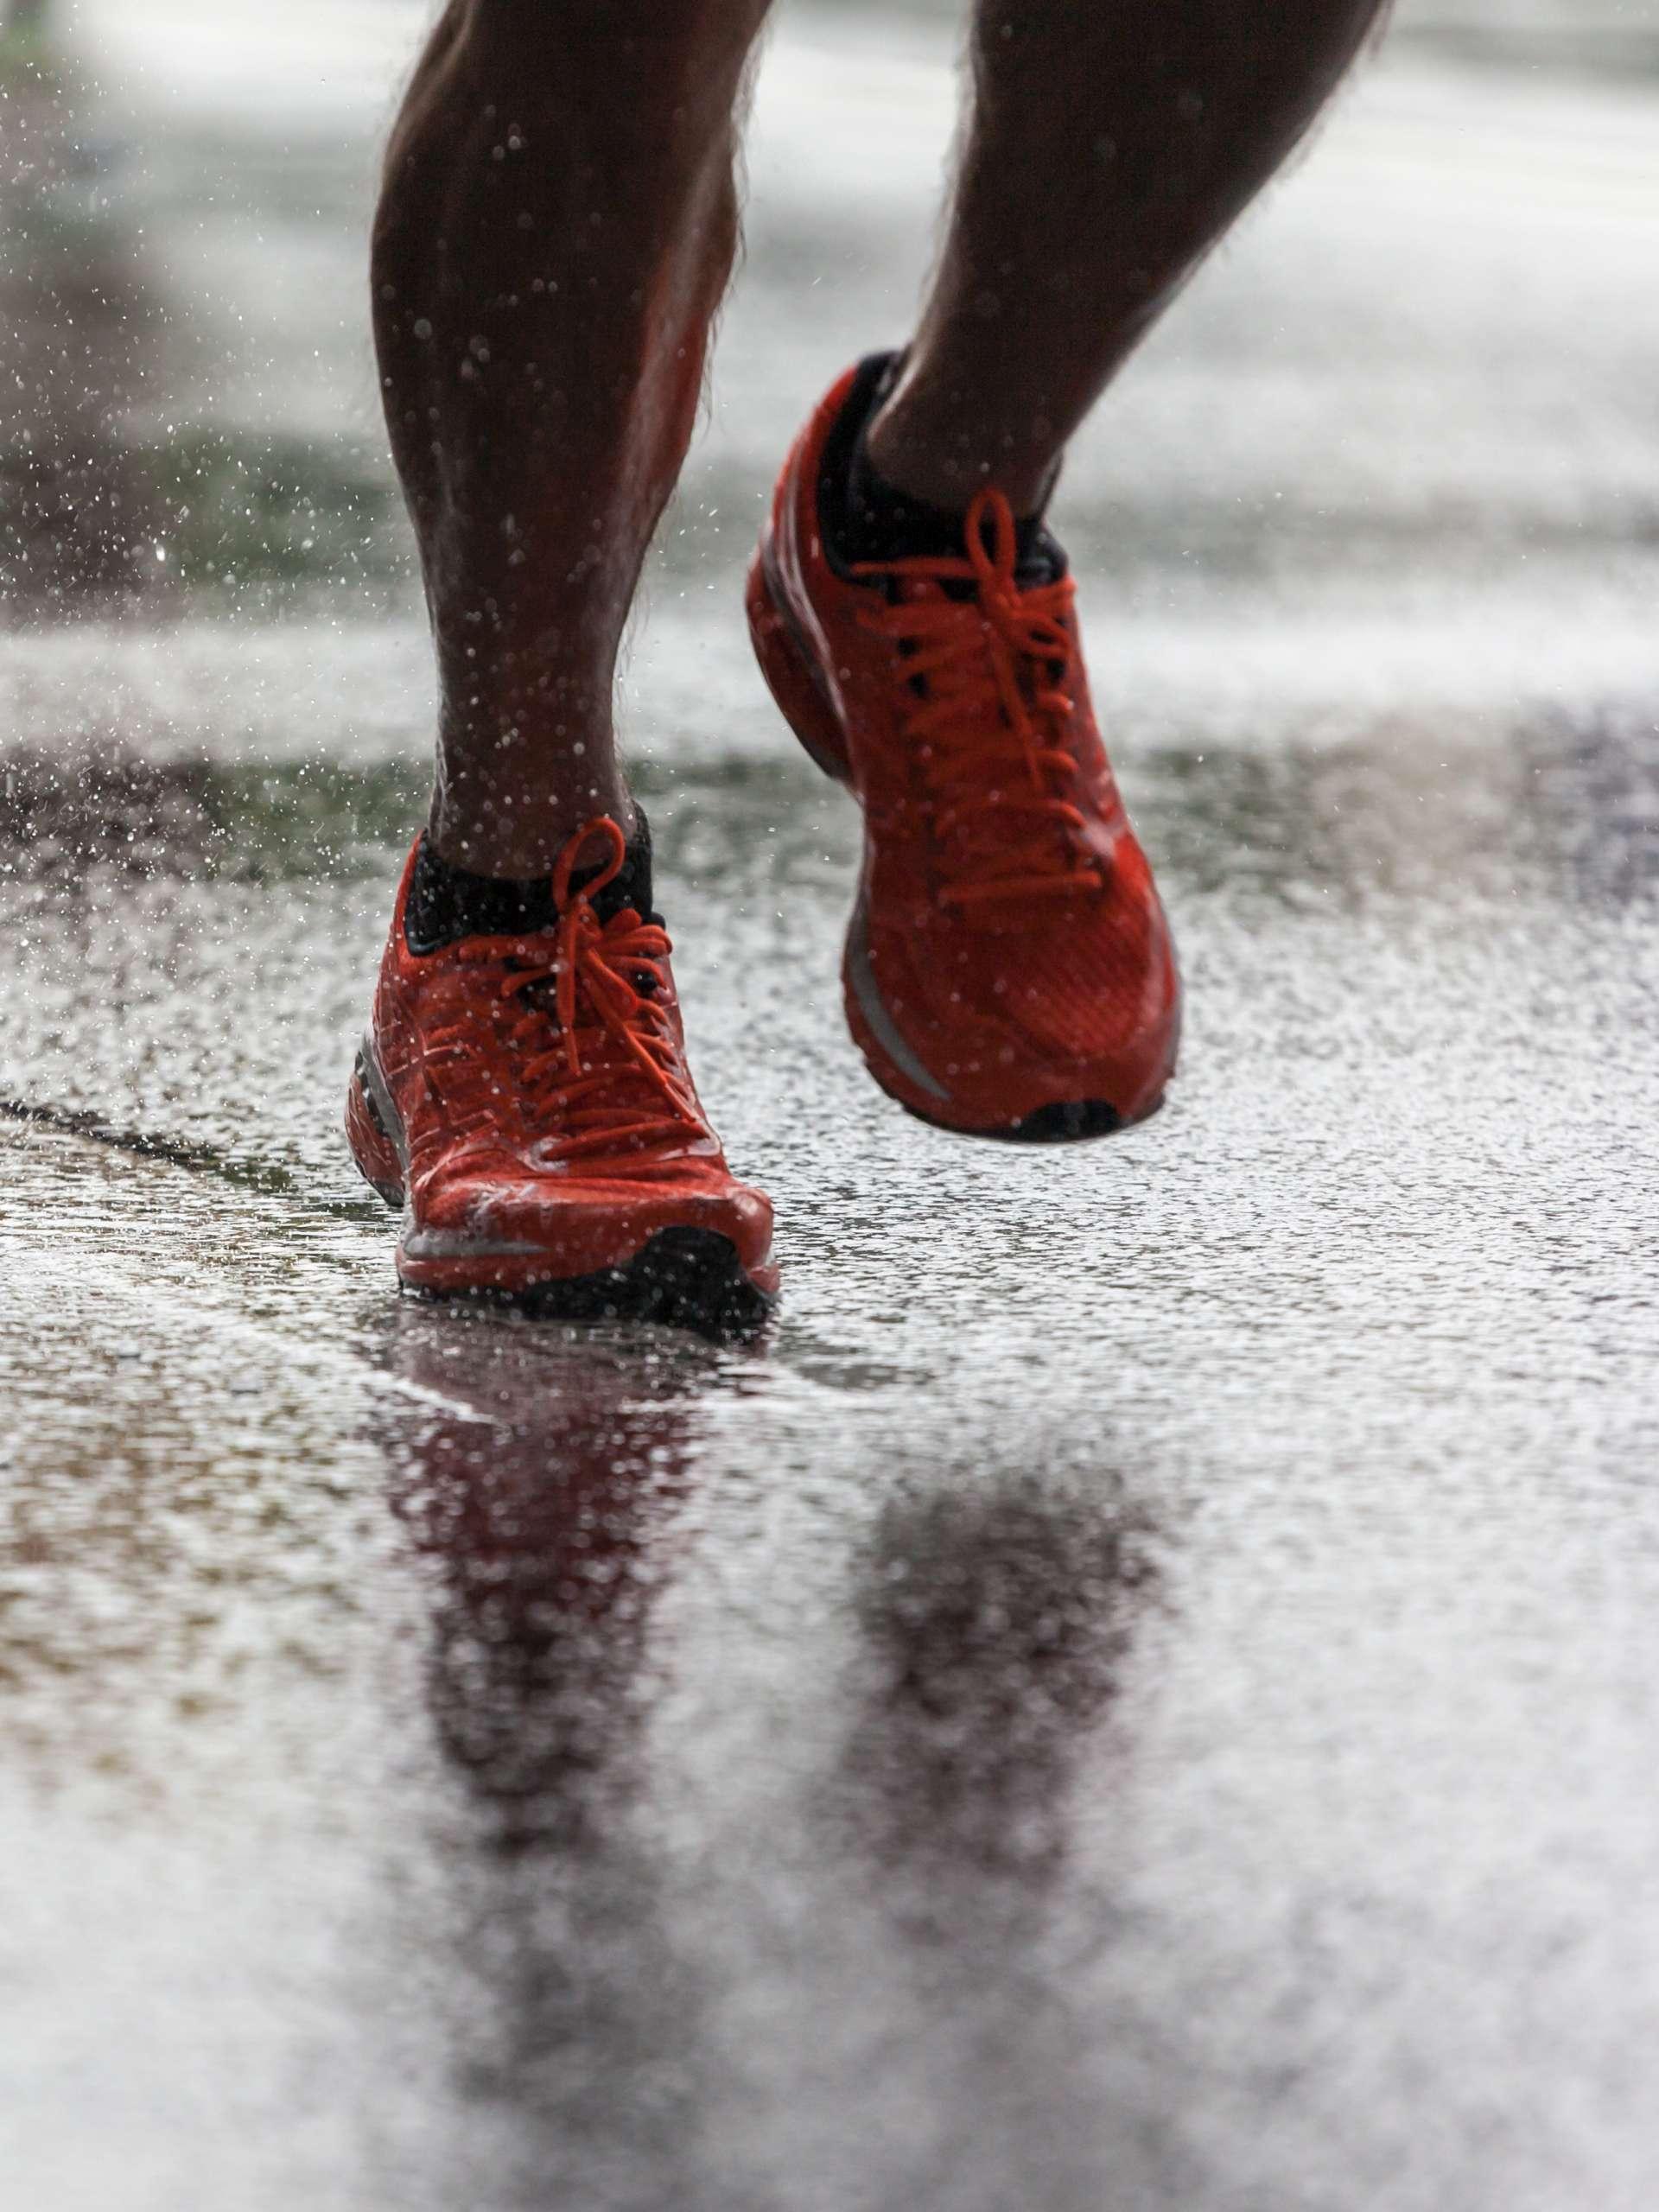 Nahaufnahme von Sportschuhen eines Athleten, der auf einem nassen Asphalt läuft. Spritzwasser unter den Füßen. Training im Regen.